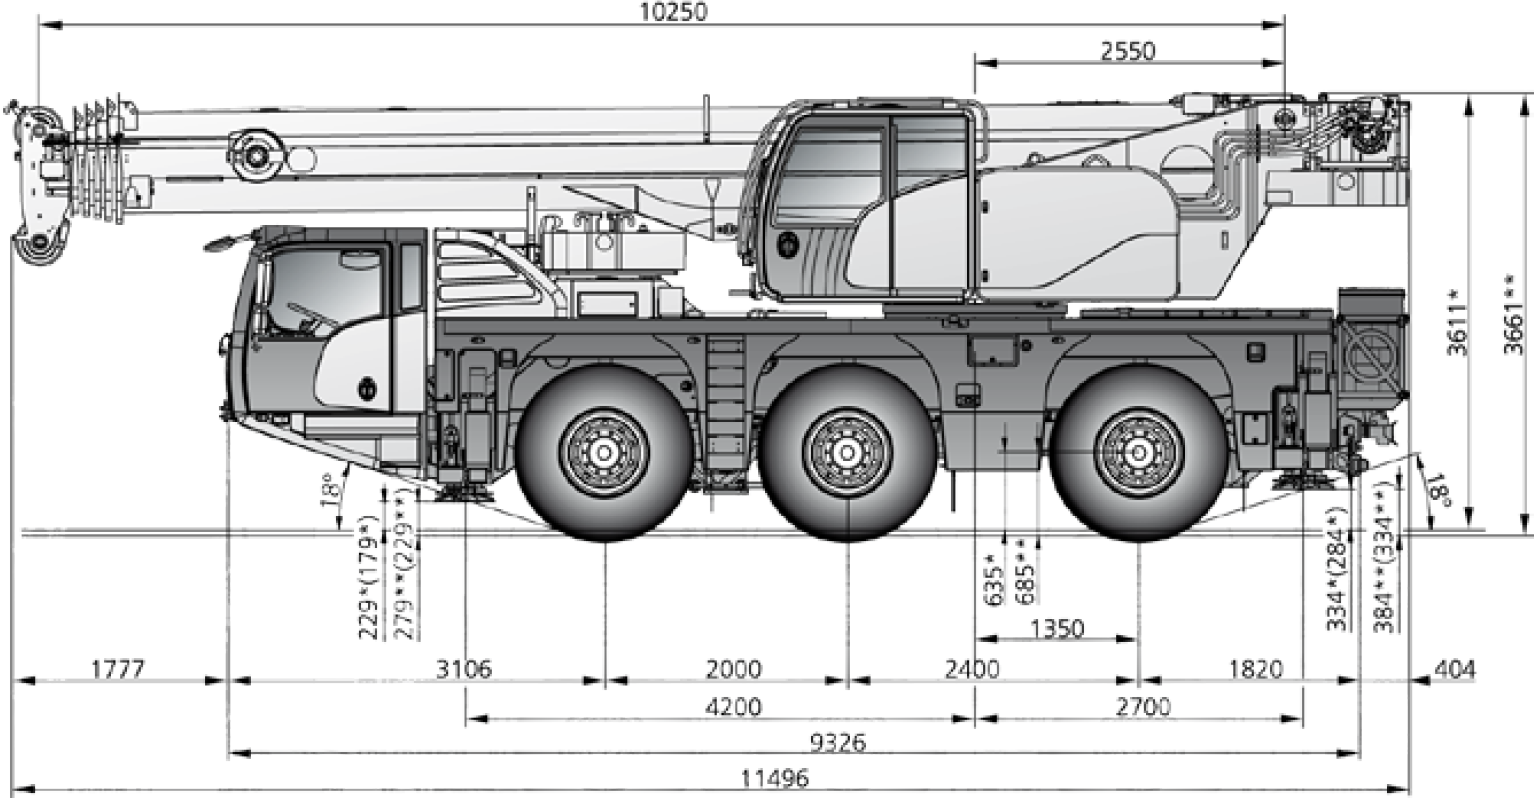 55 ton crane hire Dimensions Diagram